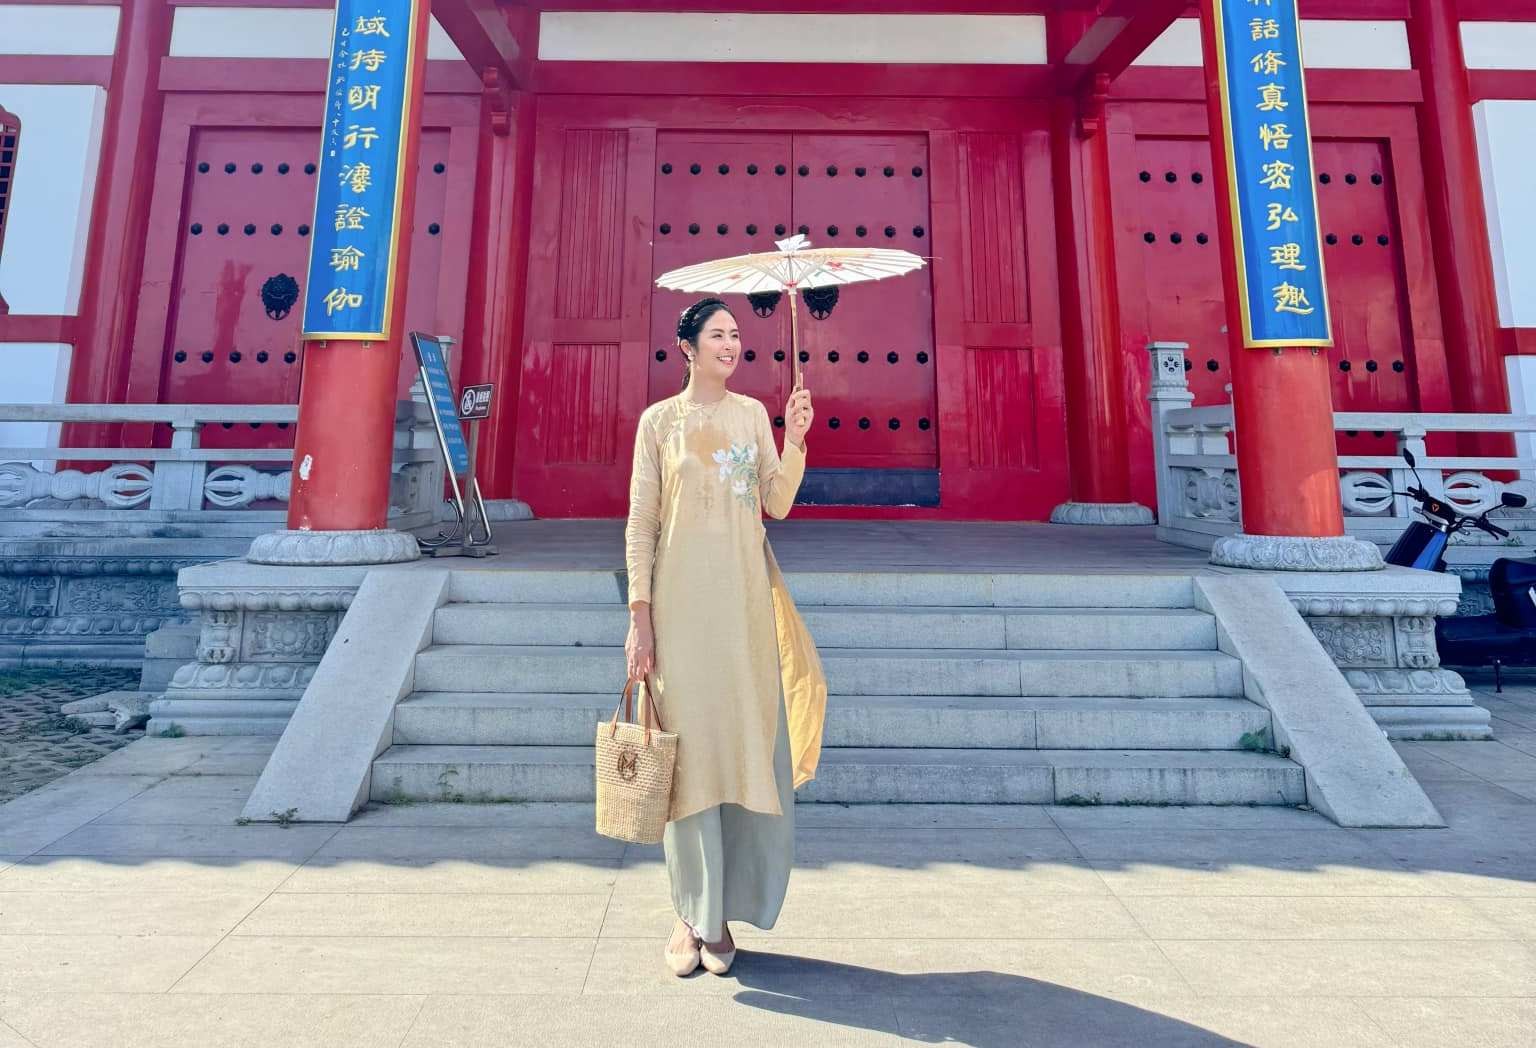 Hoa hậu Ngọc Hân diện áo dài rạng rỡ ở Trung Quốc